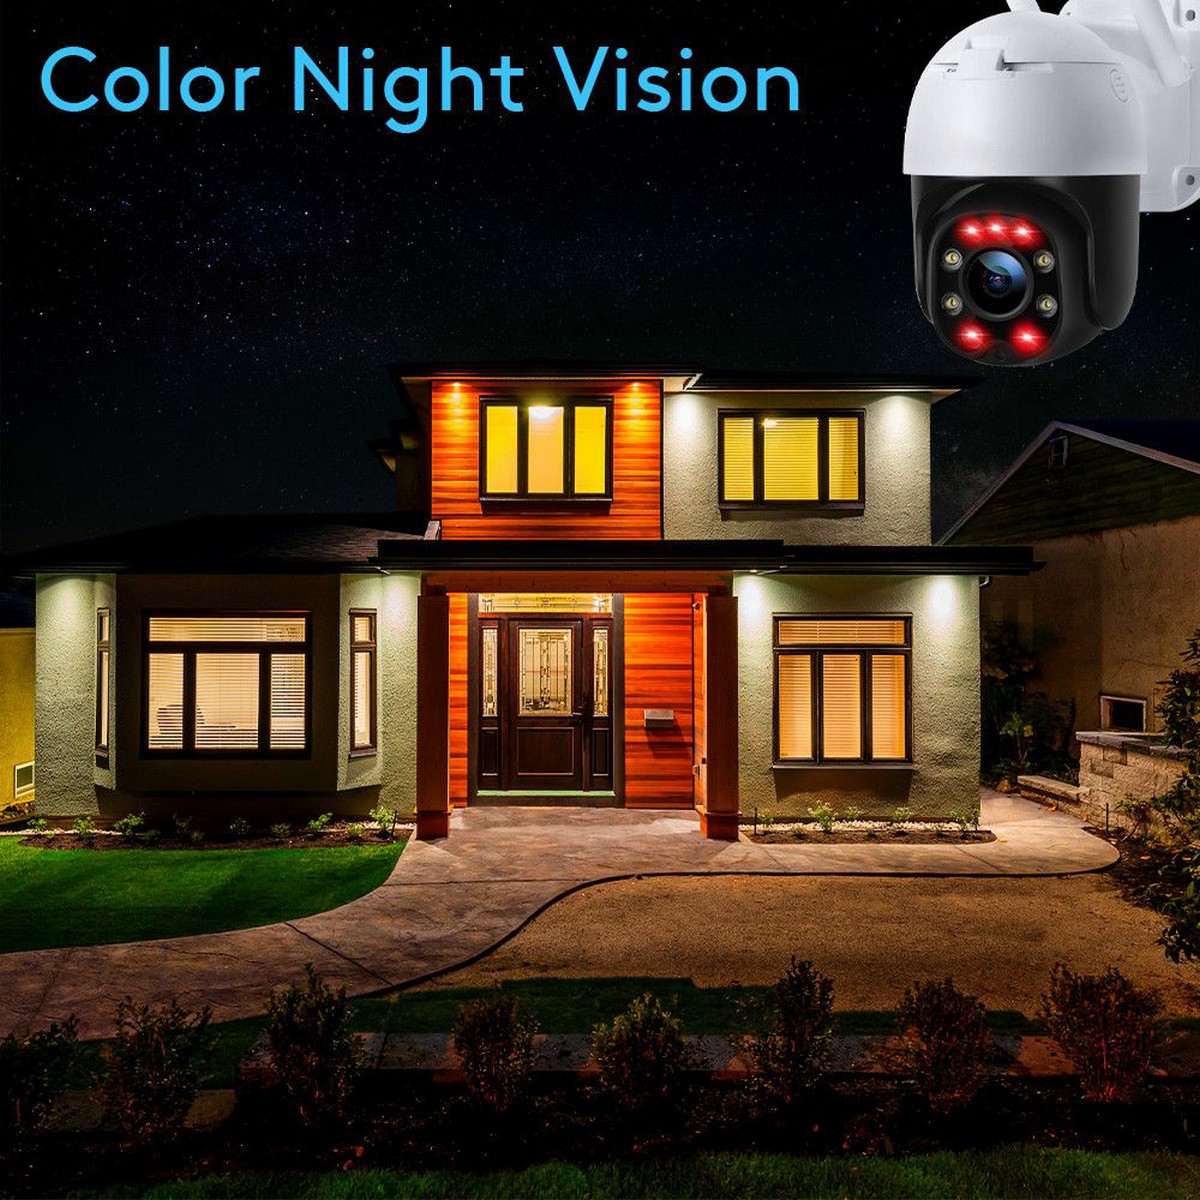 caméra de sécurité ip vision nocturne - leds infrarouges colorées